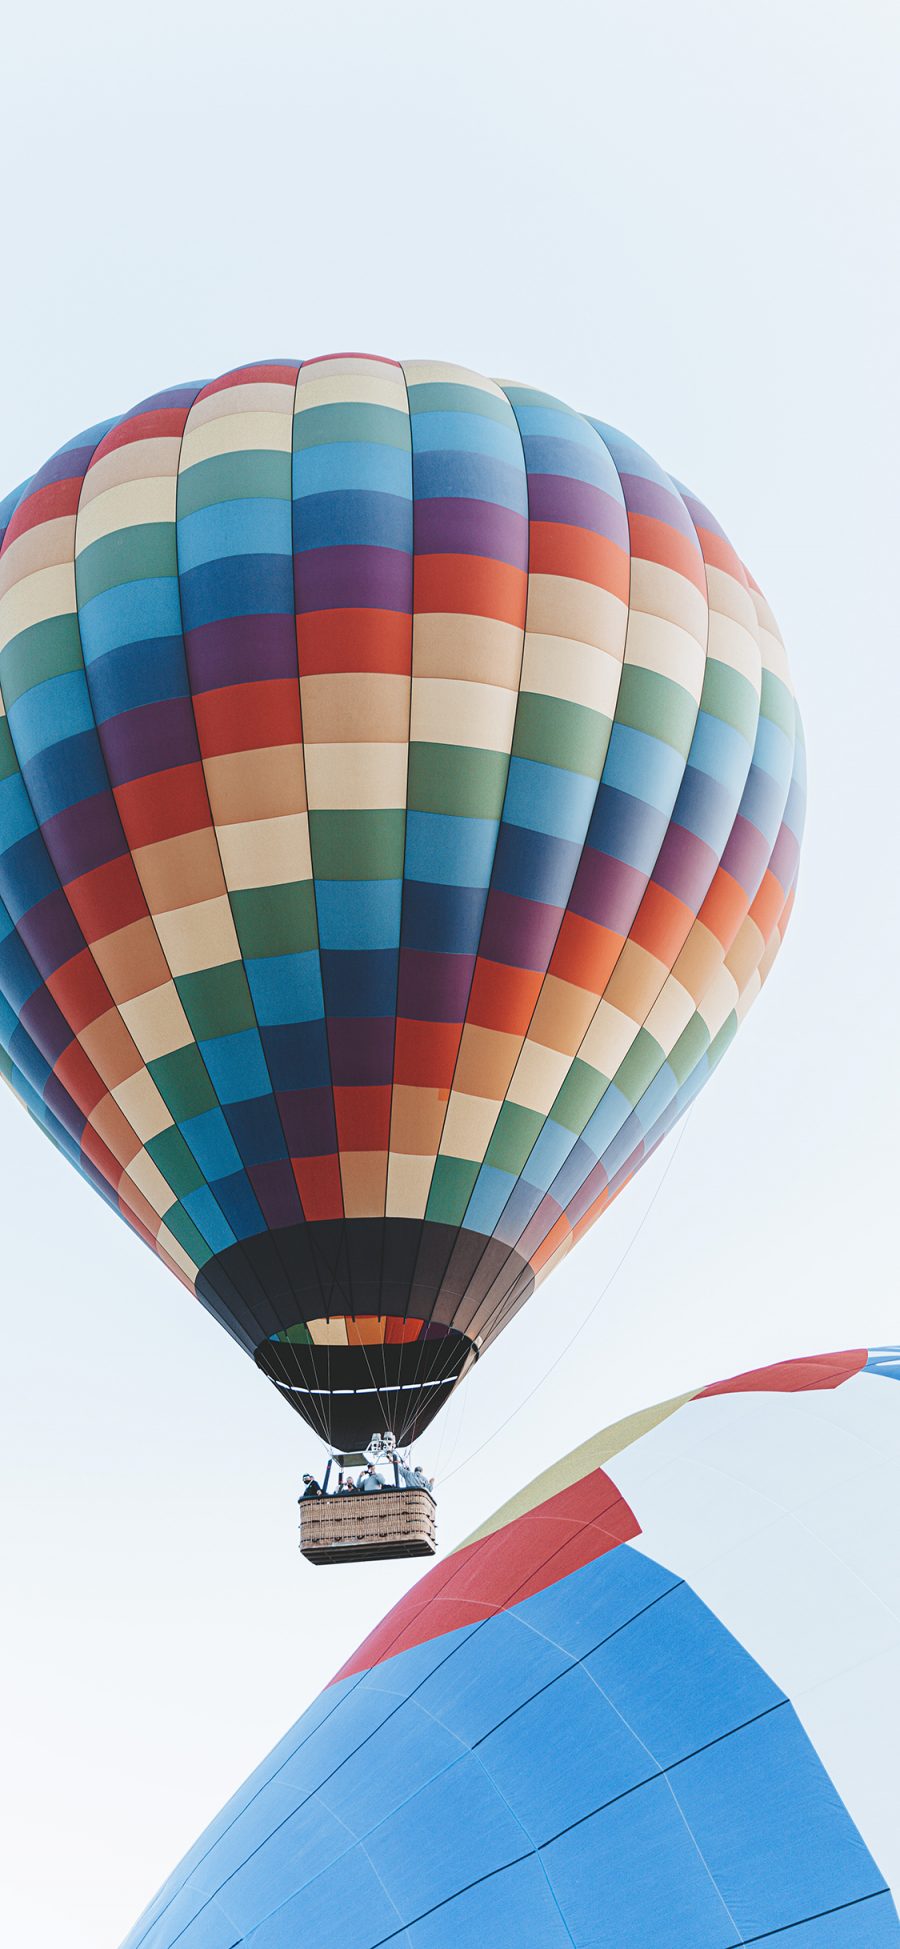 [2436×1125]热气球 升空 游玩 五彩 苹果手机壁纸图片